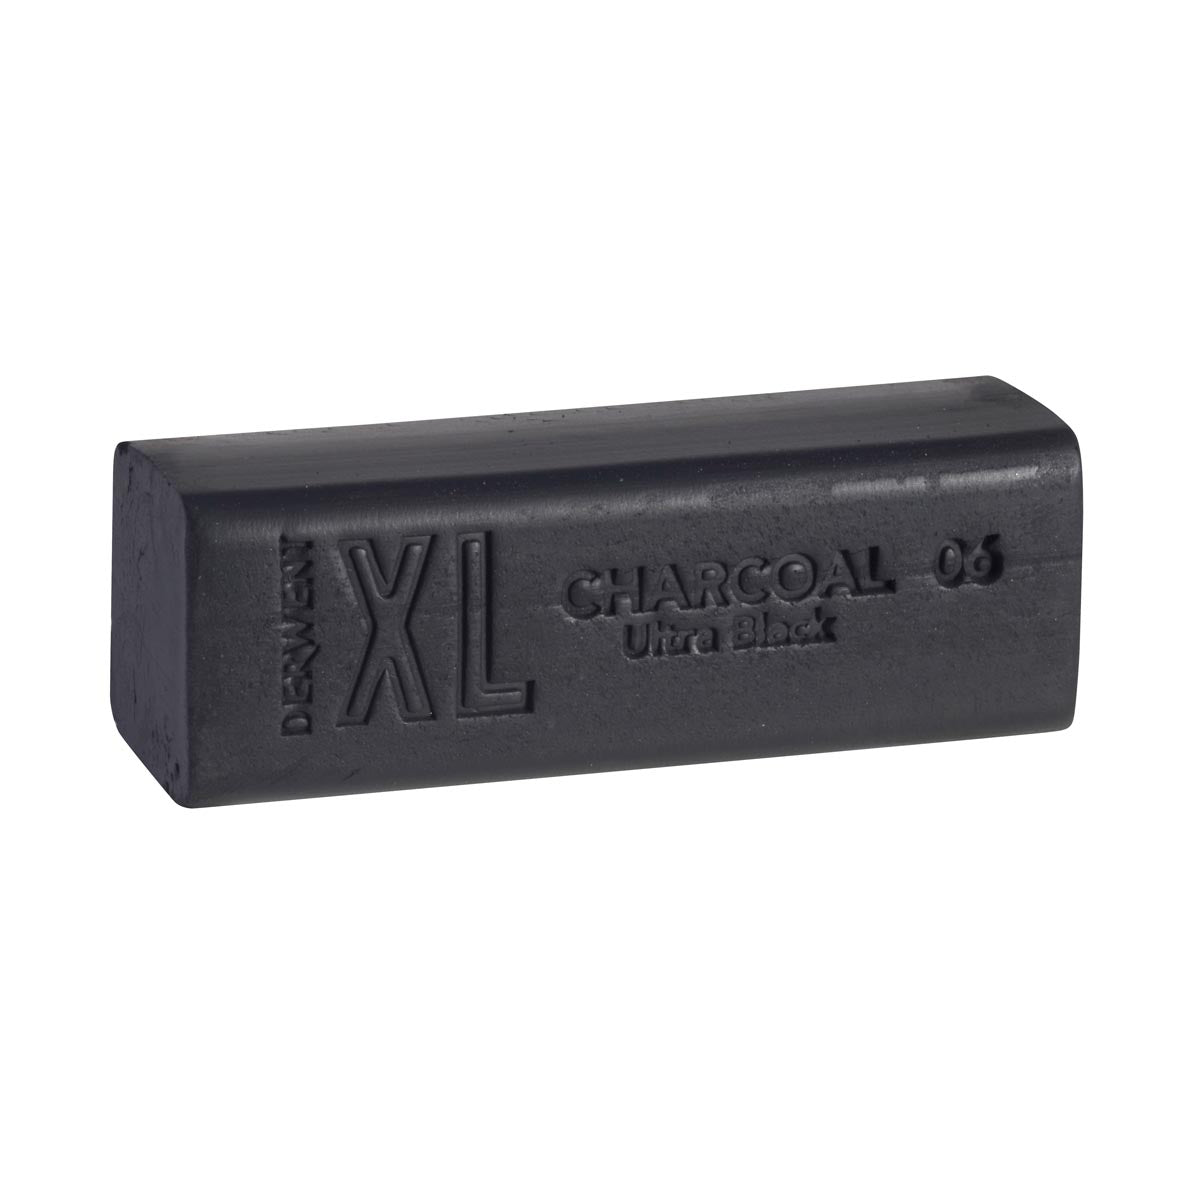 Derwent - Charcoal XL Blocks - Ultra Black